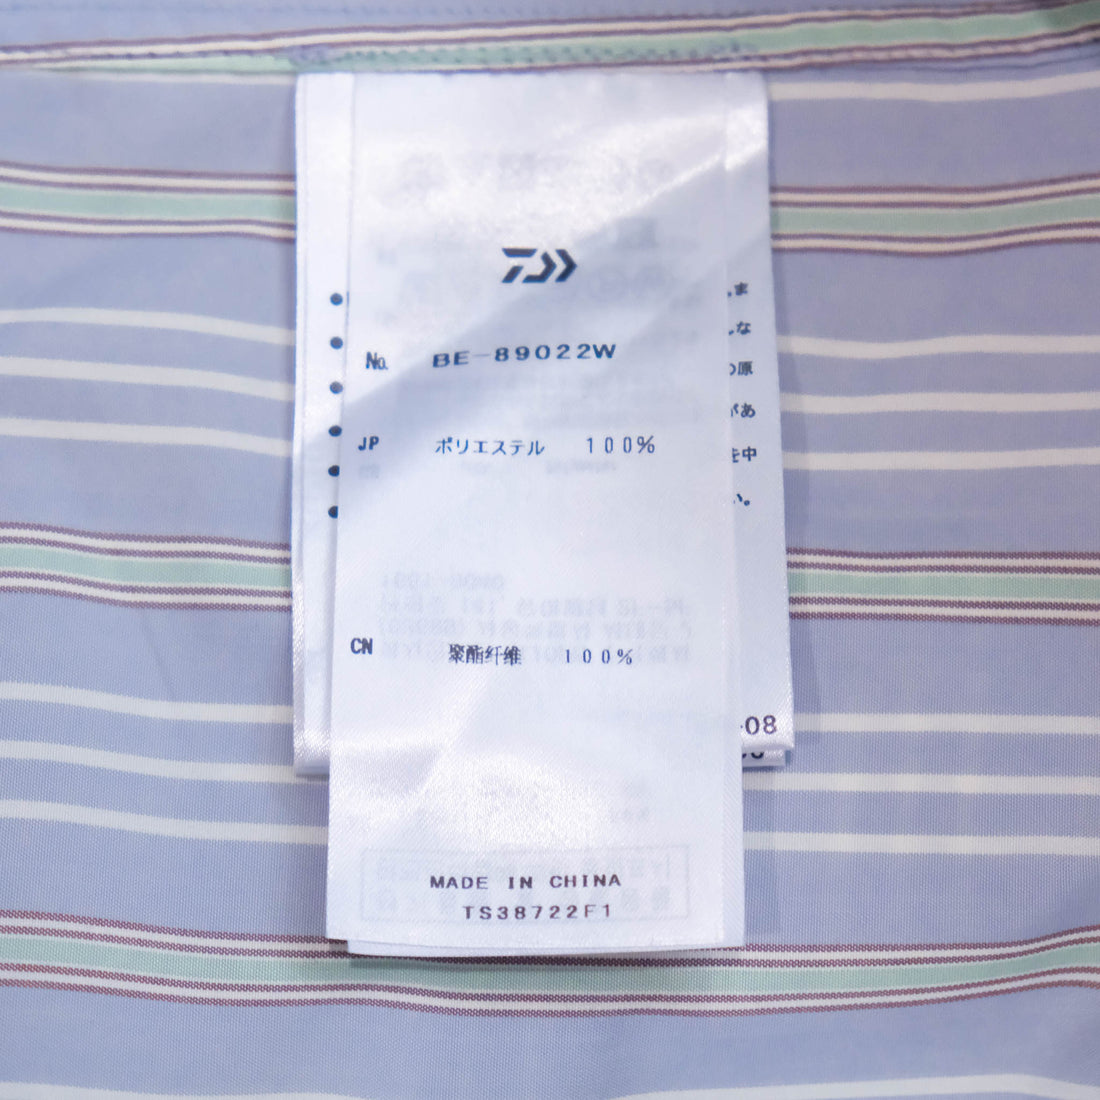 【DAIWA PIER39 / TECH WORK SHIRT (BLUE STRIPE) / SIZE M】